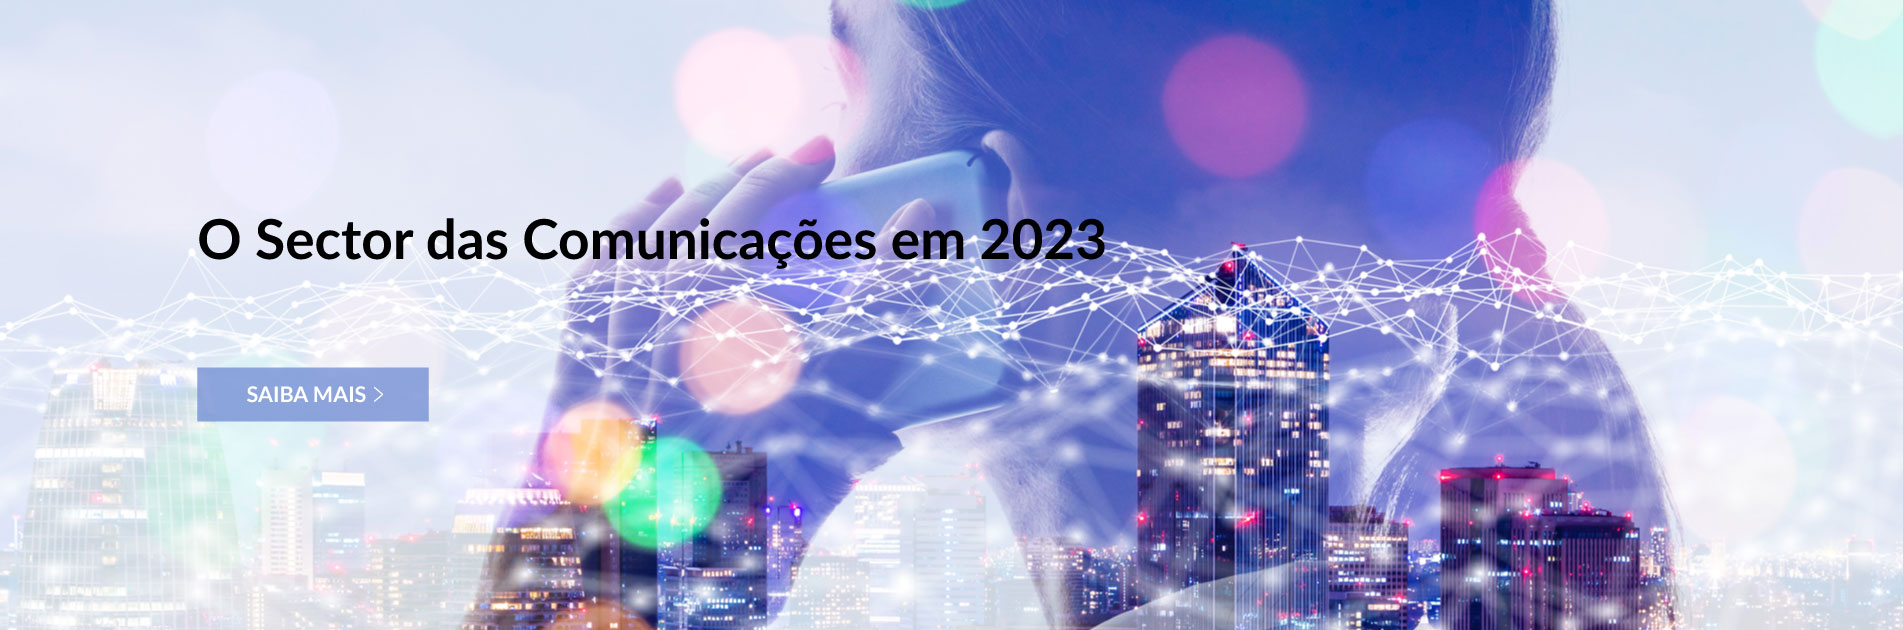 Saiba como se caracterizou a evolução do sector das comunicações em 2023.